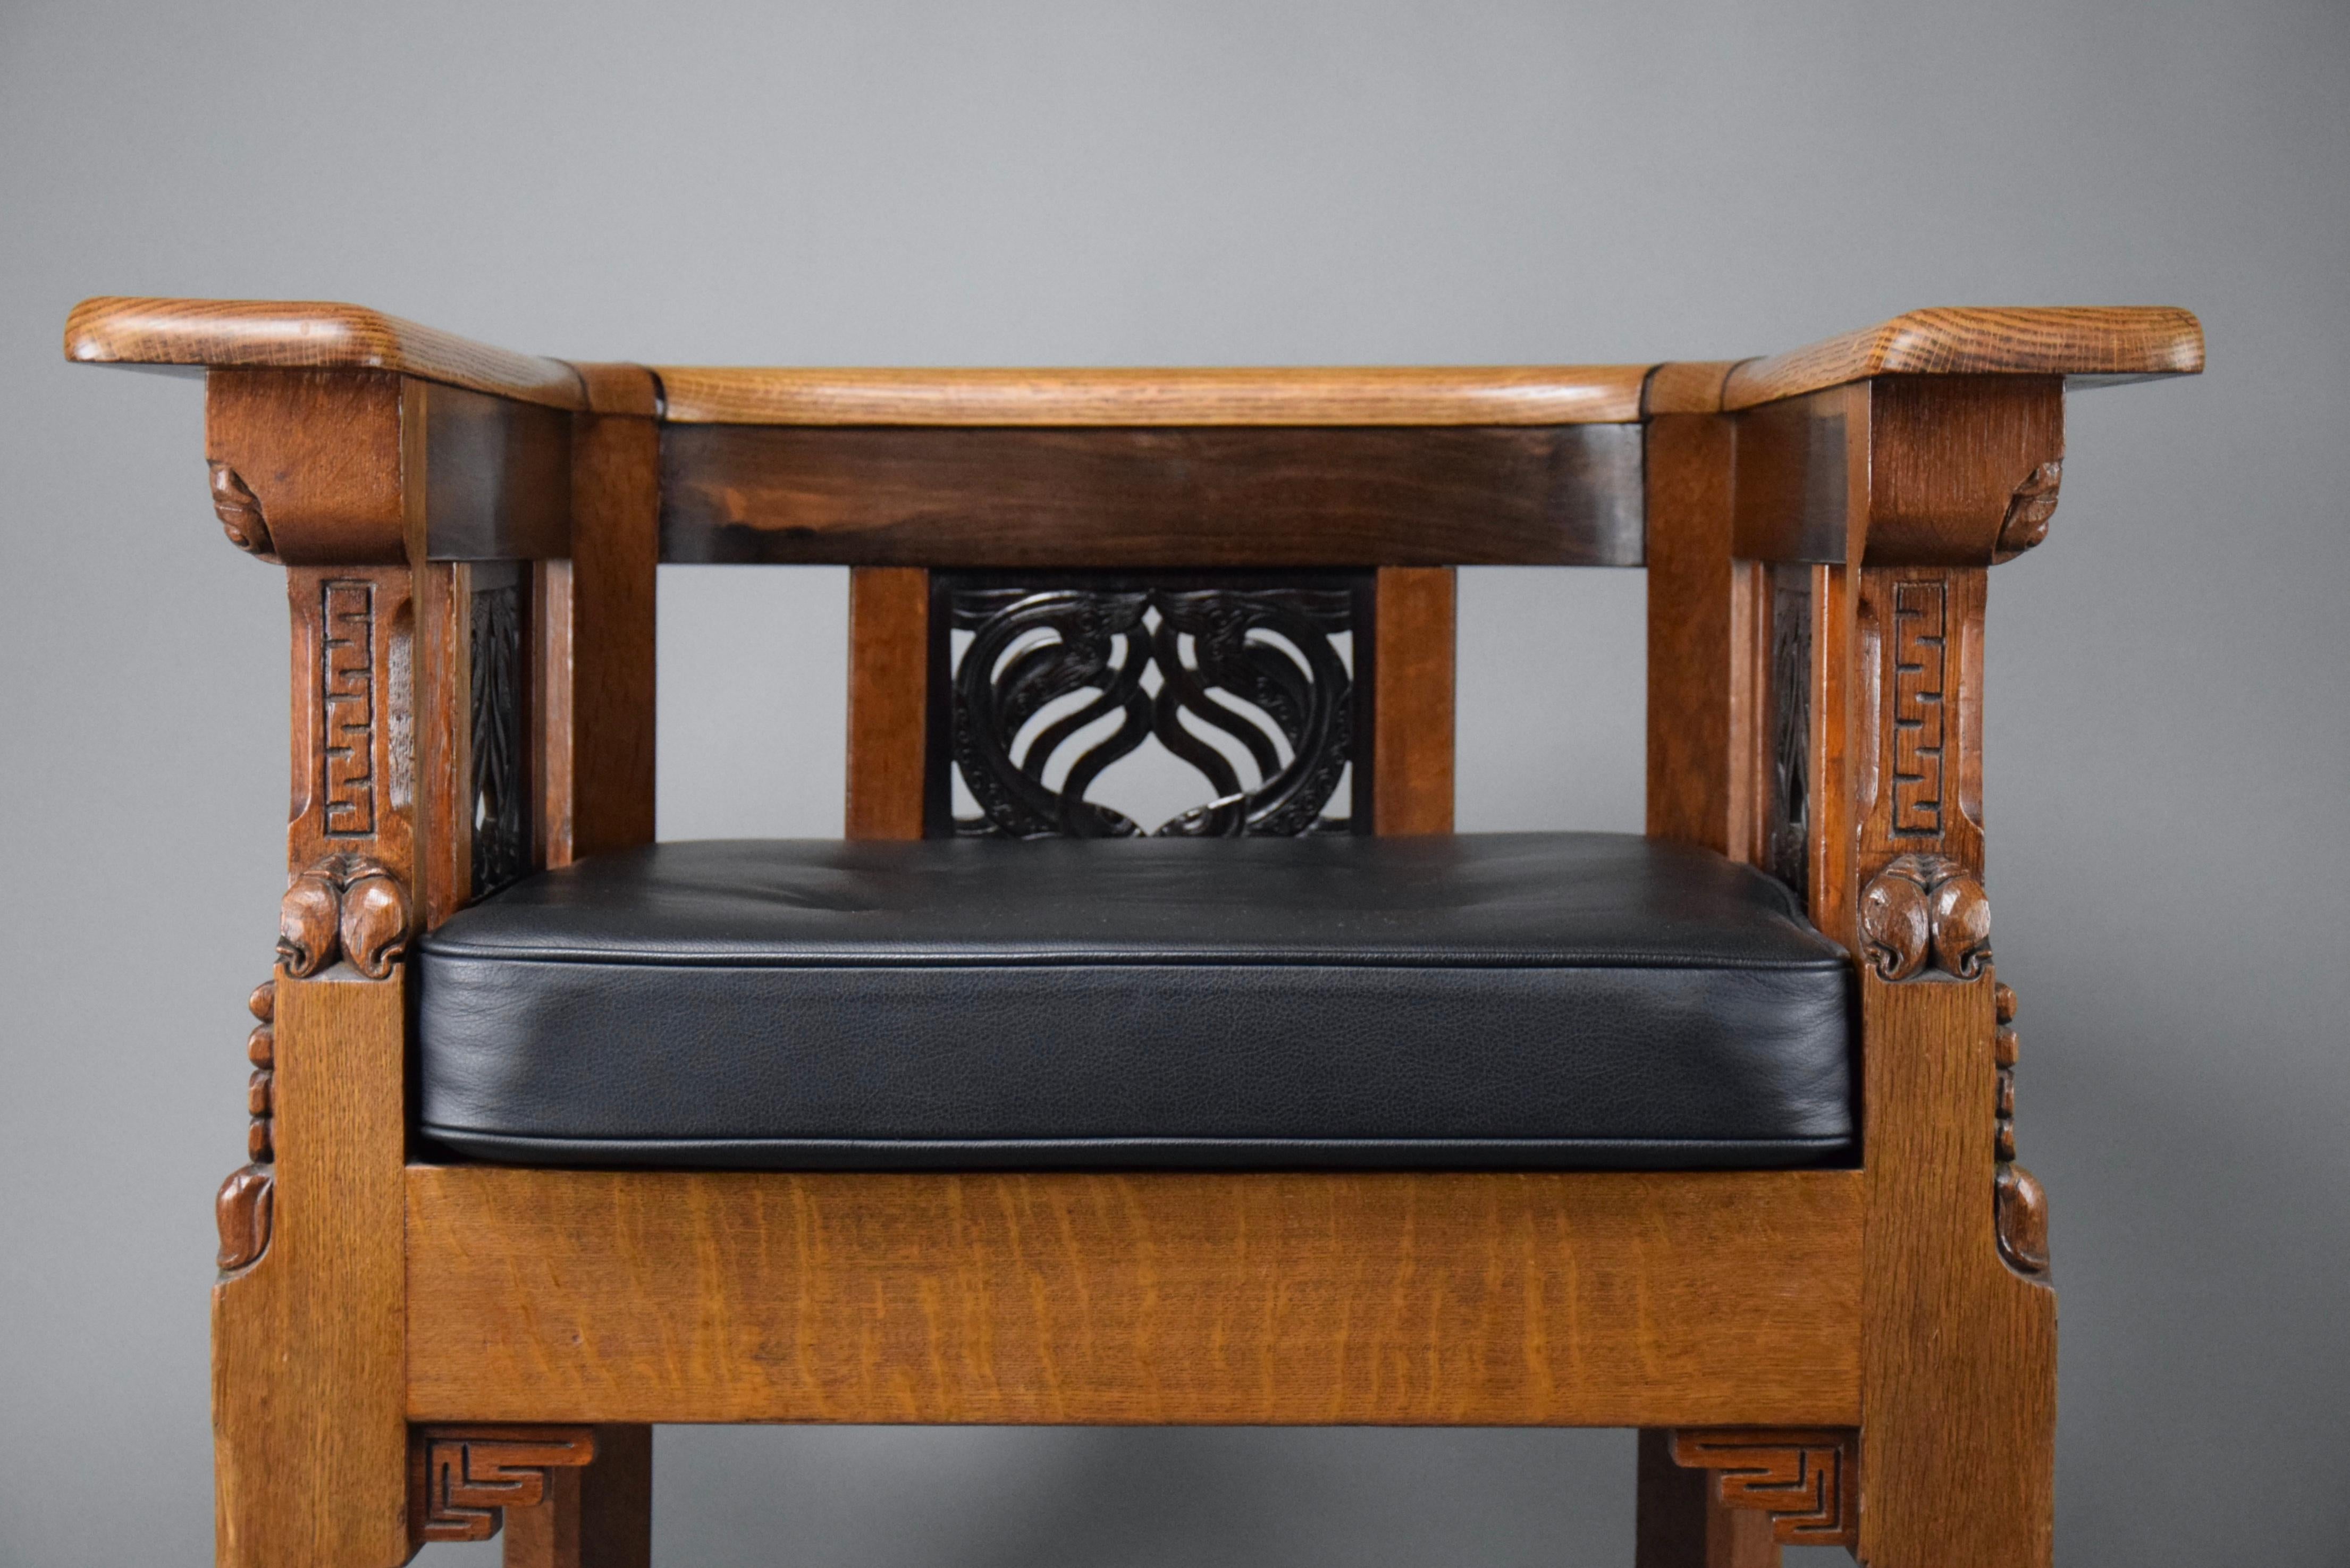 Voici un chef-d'œuvre d'Elegance Art Déco : Le fauteuil Lion Cachet en bois de chêne et de jatoba fabriqué à la main, unique en son genre !

Préparez-vous à être captivé par une véritable œuvre d'art qui transcende le simple mobilier. Ce fauteuil en